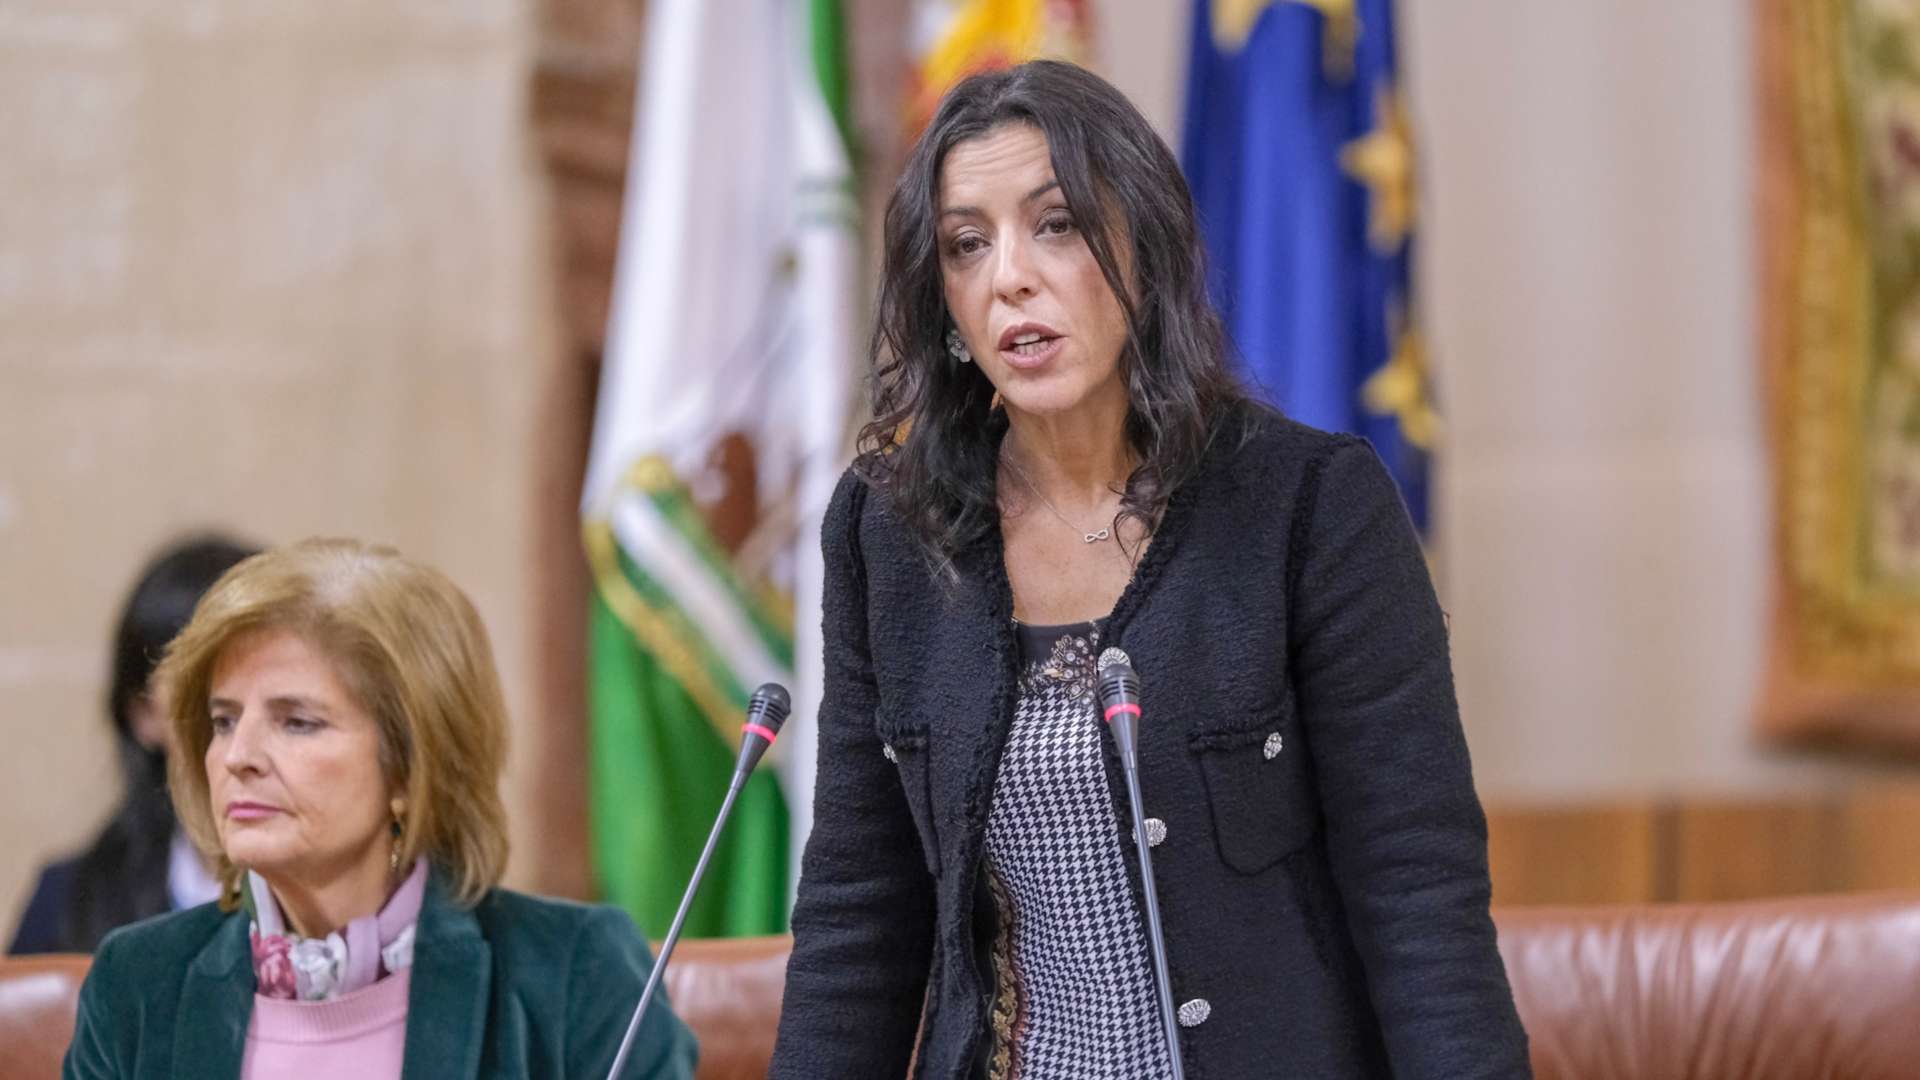 Marta Bosquet, de Ciudadanos, nueva presidenta del Parlamento andaluz